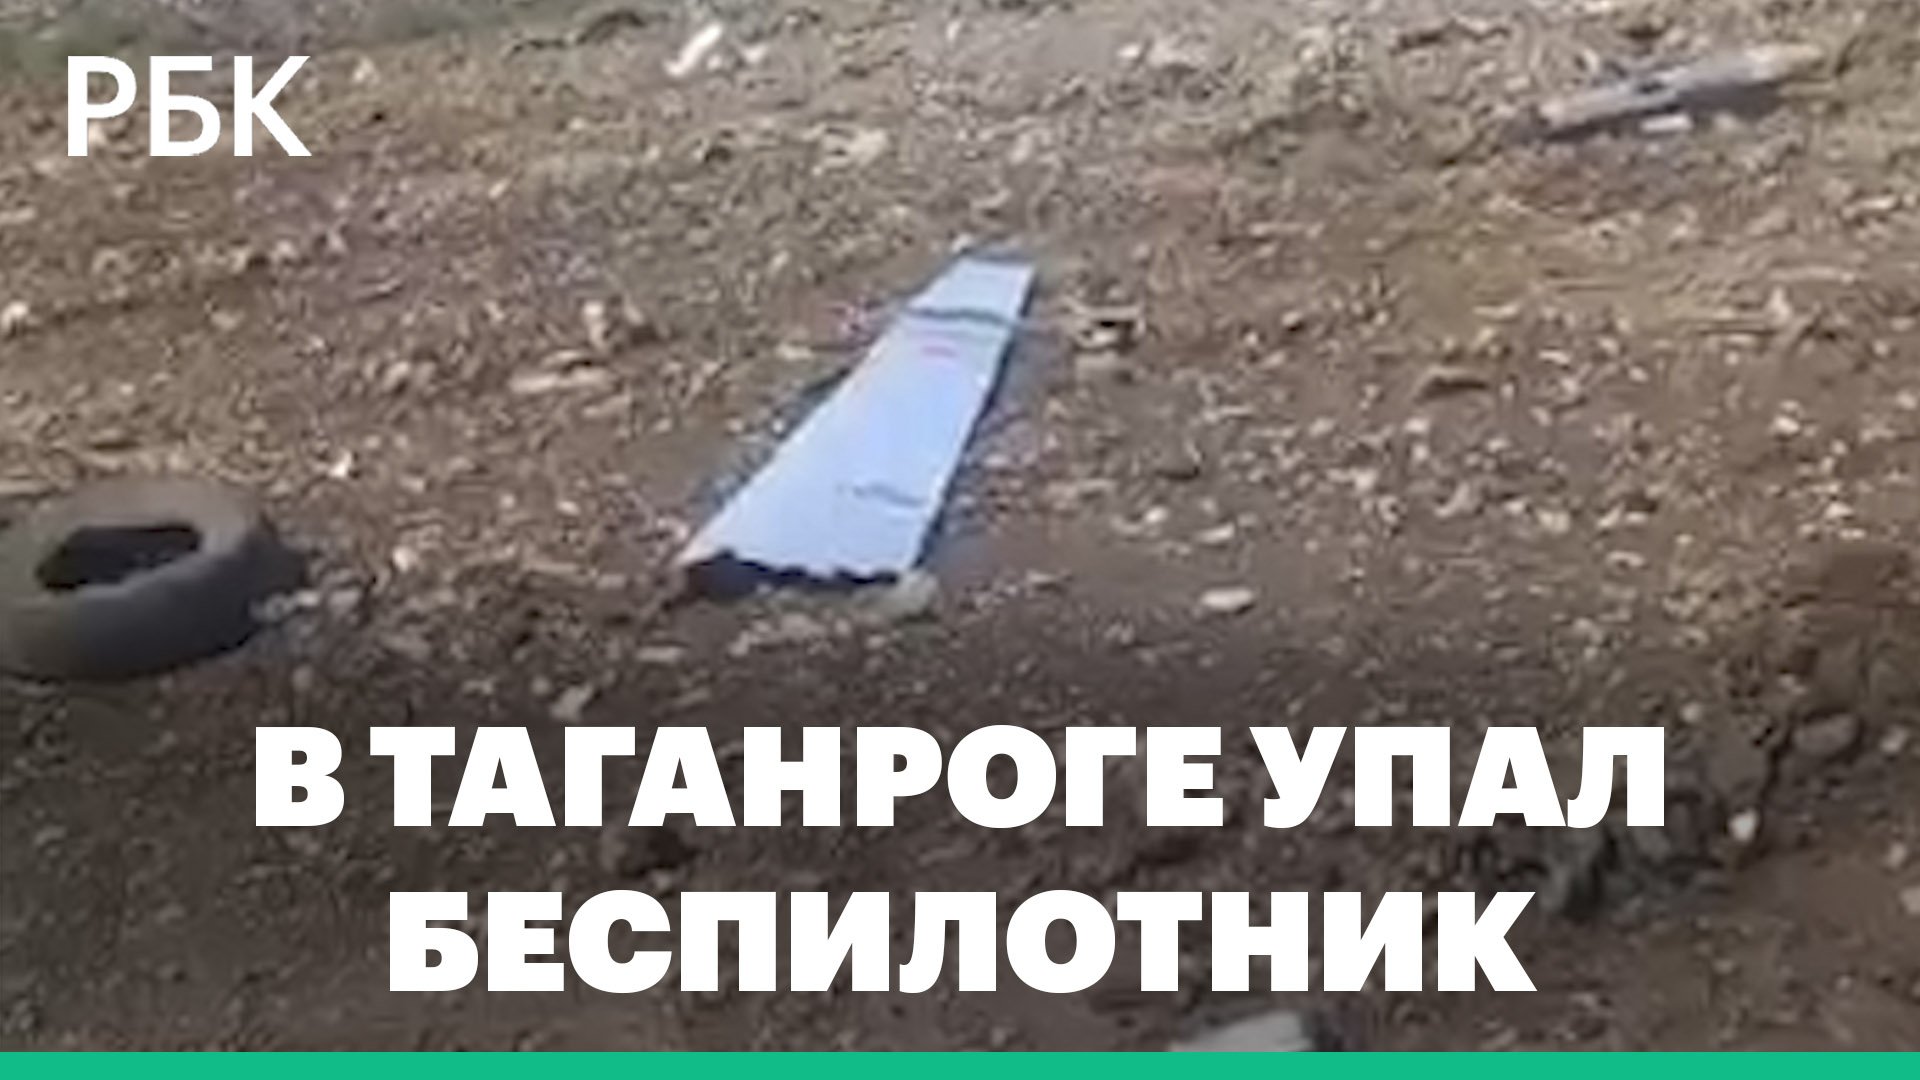 Потерявший управление беспилотник упал в Таганроге